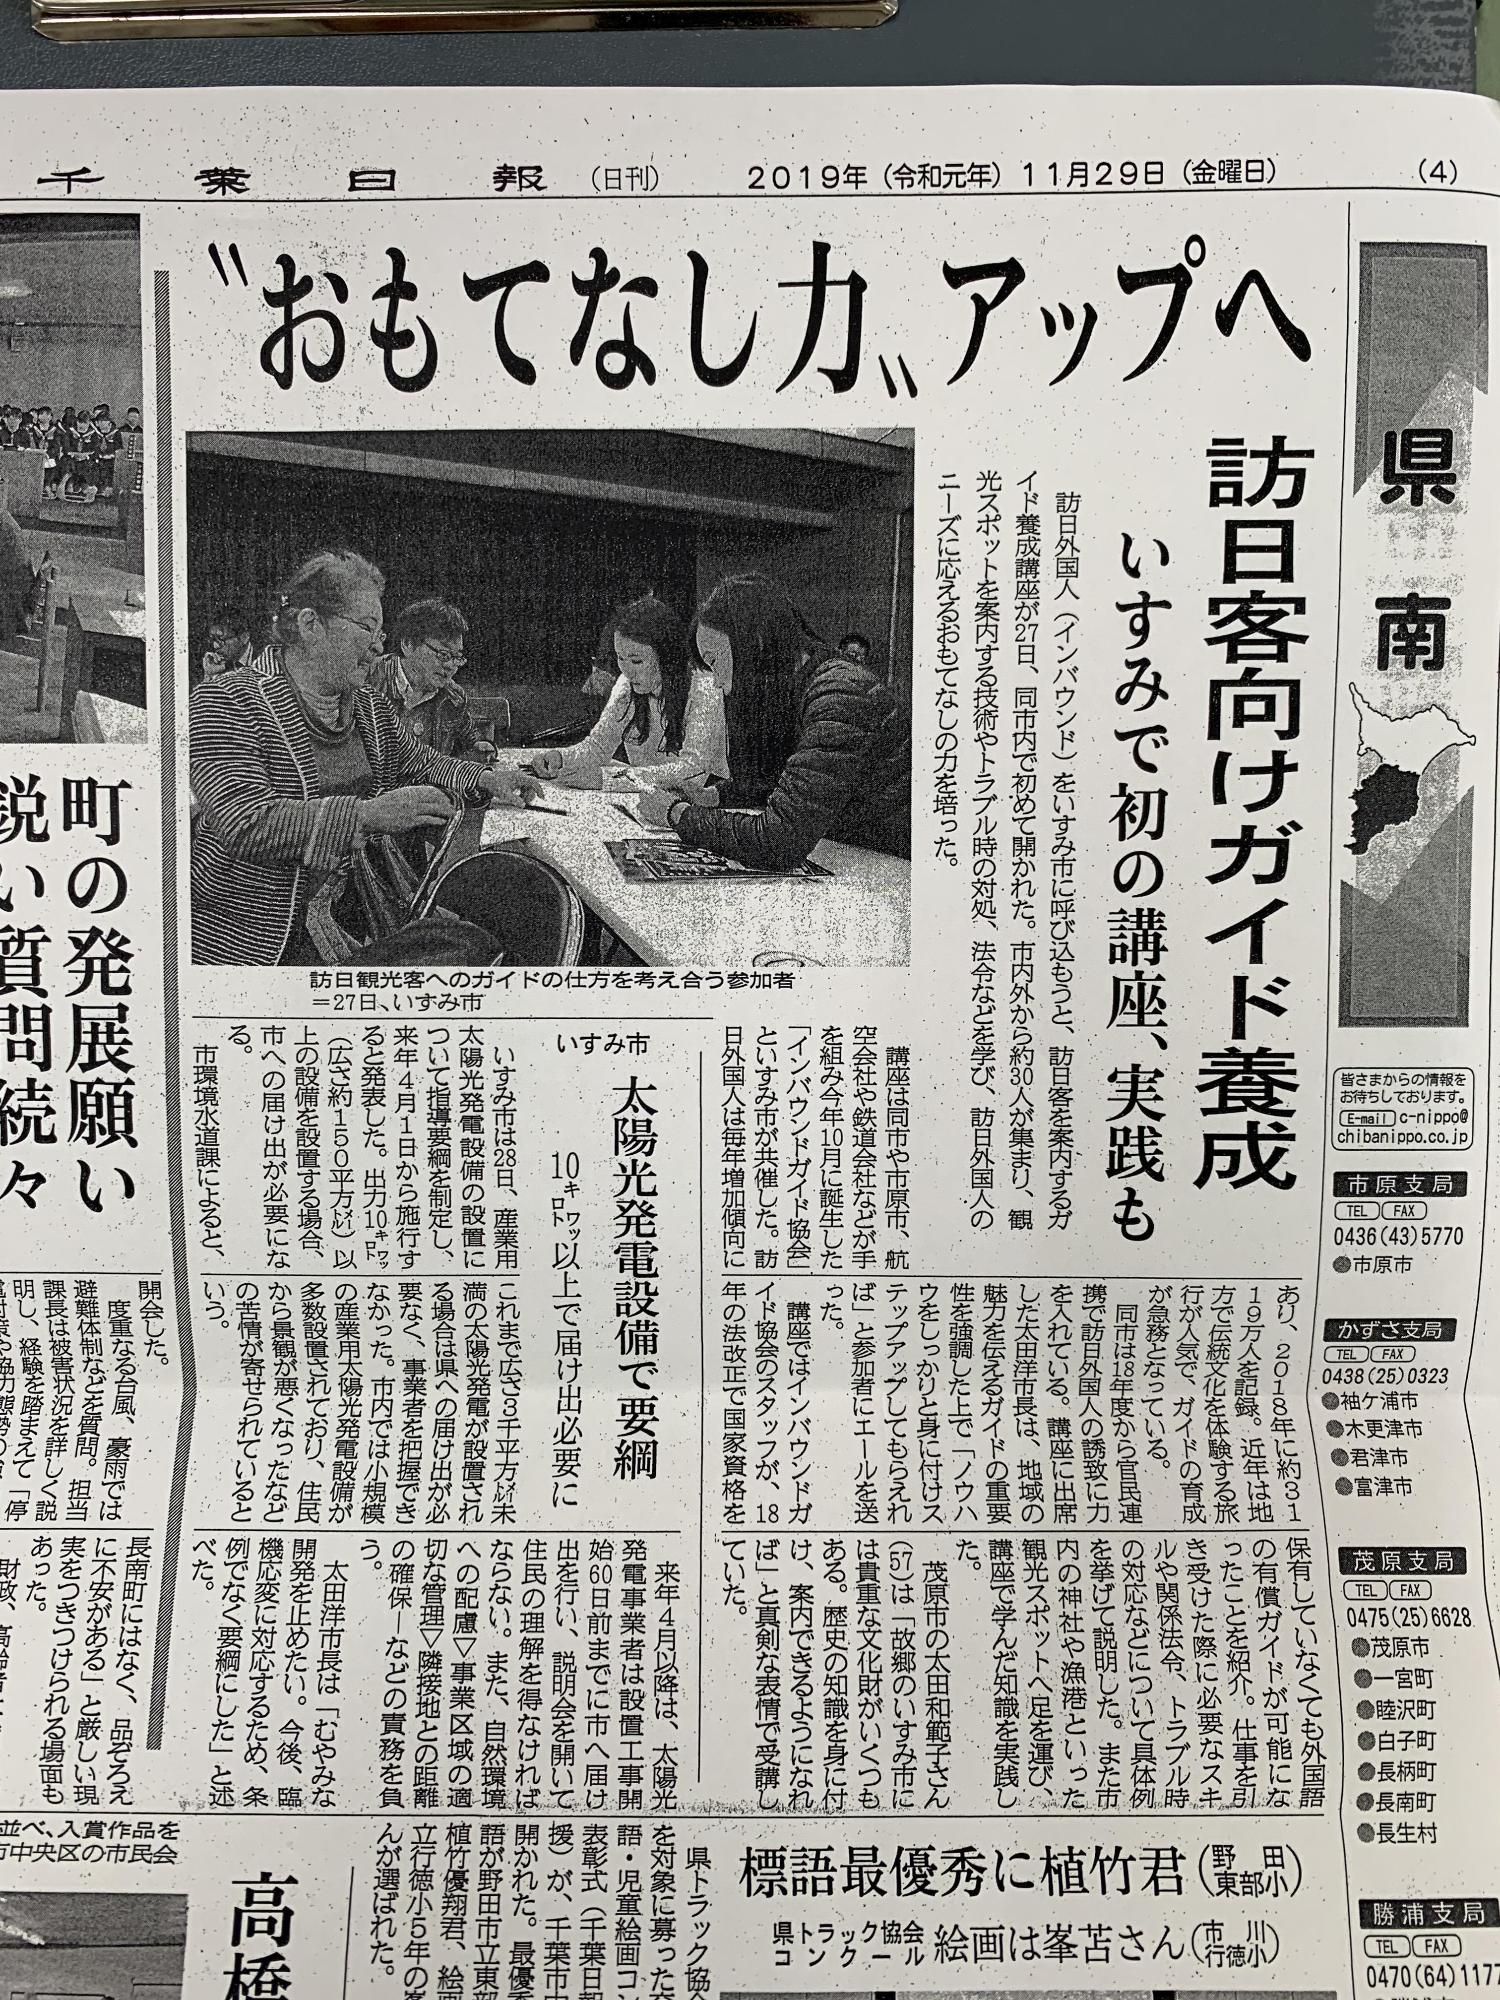 千葉日報に取り上げられた記事を示した新聞紙面の写真